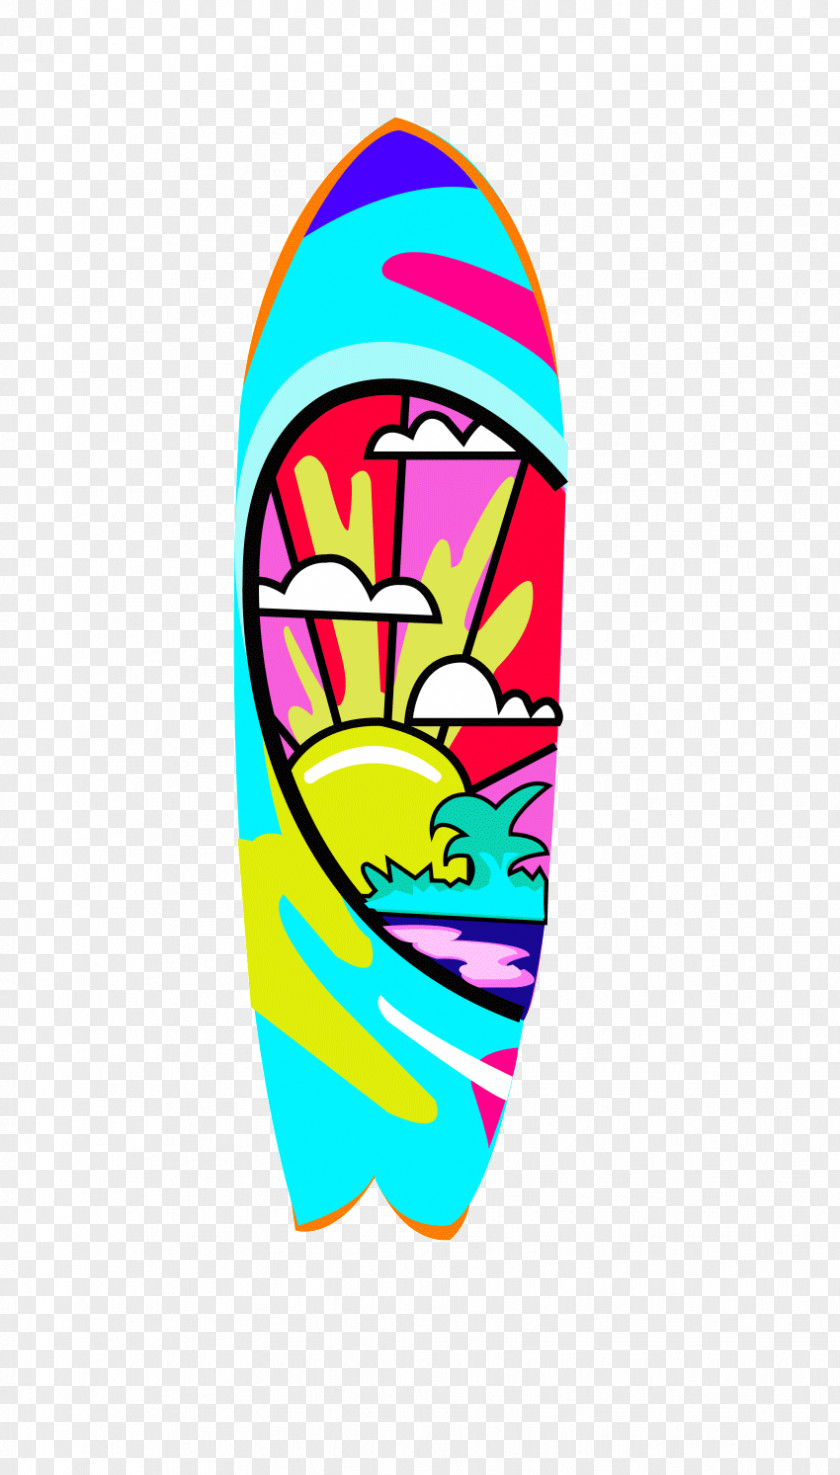 Surfboard Image Illustration Adobe Photoshop Design PNG